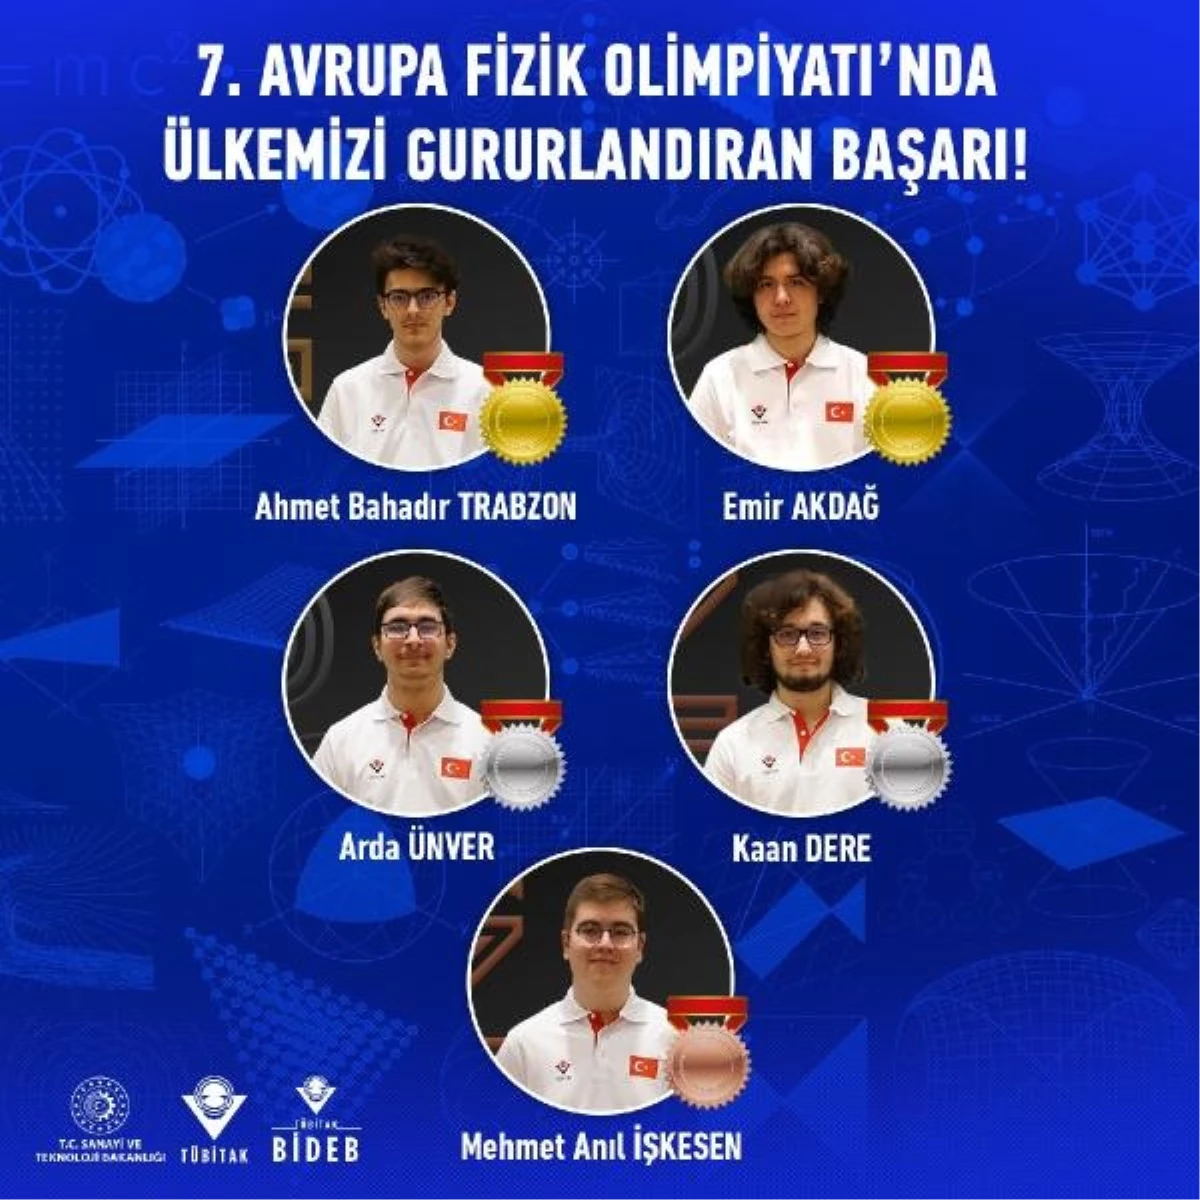 Avrupa Fizik Olimpiyatları'nda Türk öğrenciler 5 madalya kazandı